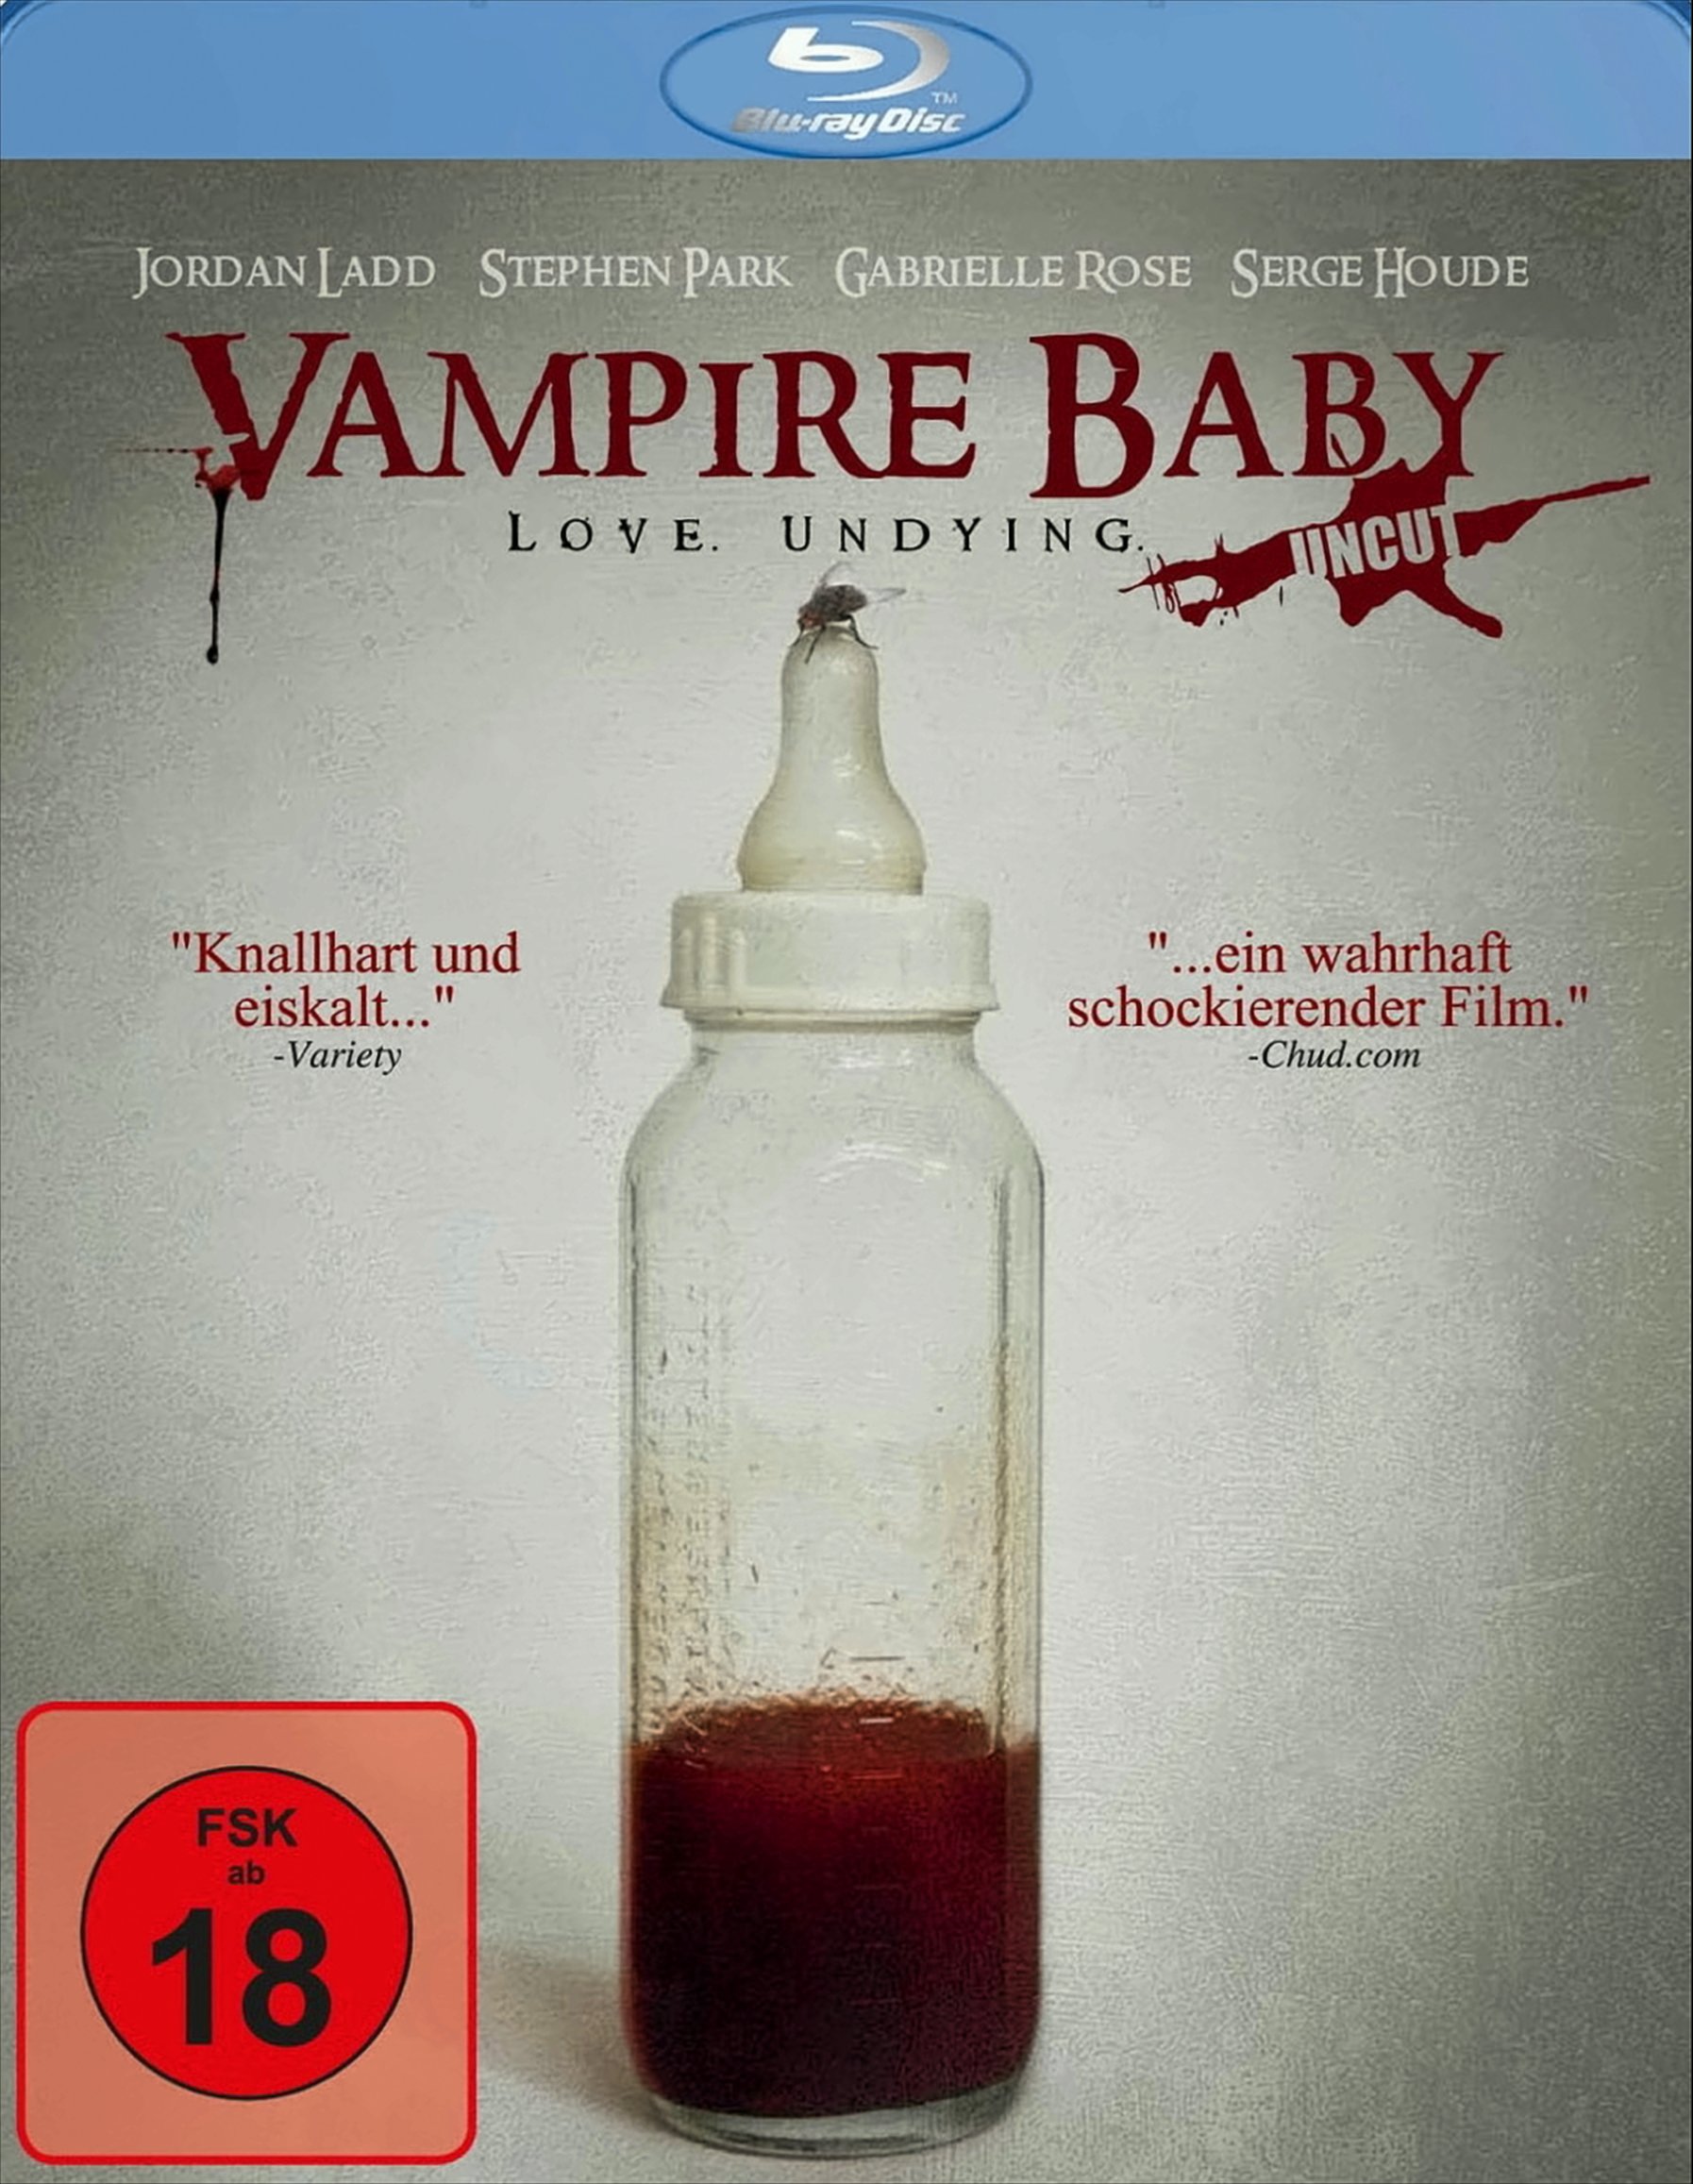 Vampire Baby - Love. Undying. (Uncut) von Delta Music